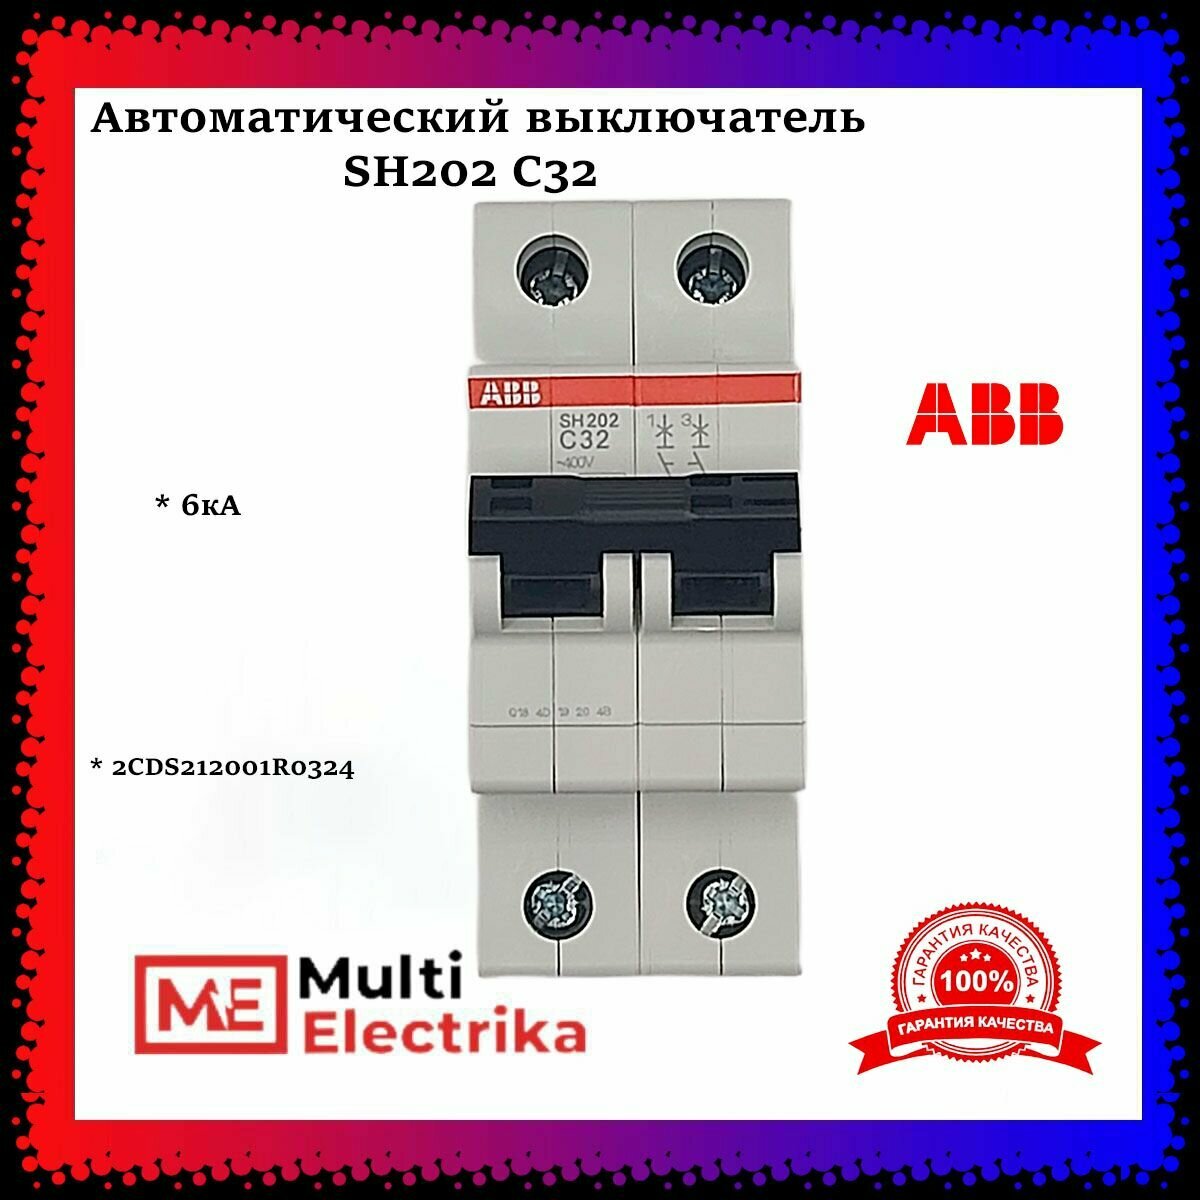 SH200 2CDS212001R0204 Автоматический выключатель двухполюсный 20А (6 кА, C) ABB - фото №3